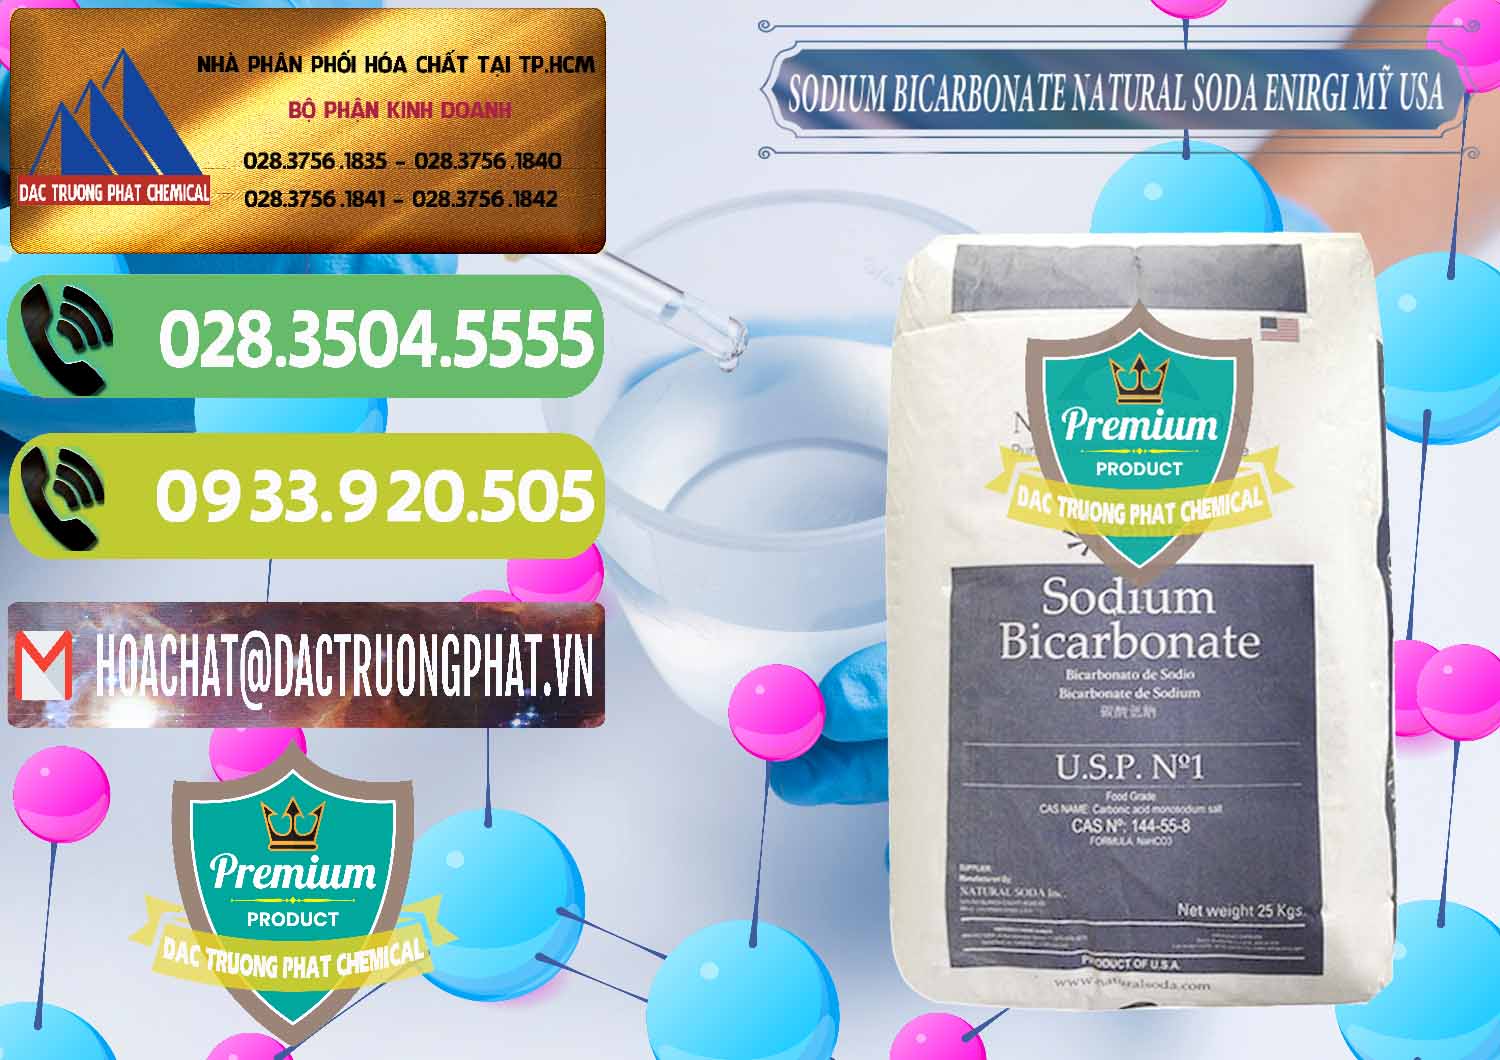 Chuyên bán ( phân phối ) Sodium Bicarbonate – Bicar NaHCO3 Food Grade Natural Soda Enirgi Mỹ USA - 0257 - Công ty bán - cung cấp hóa chất tại TP.HCM - hoachatmientay.vn